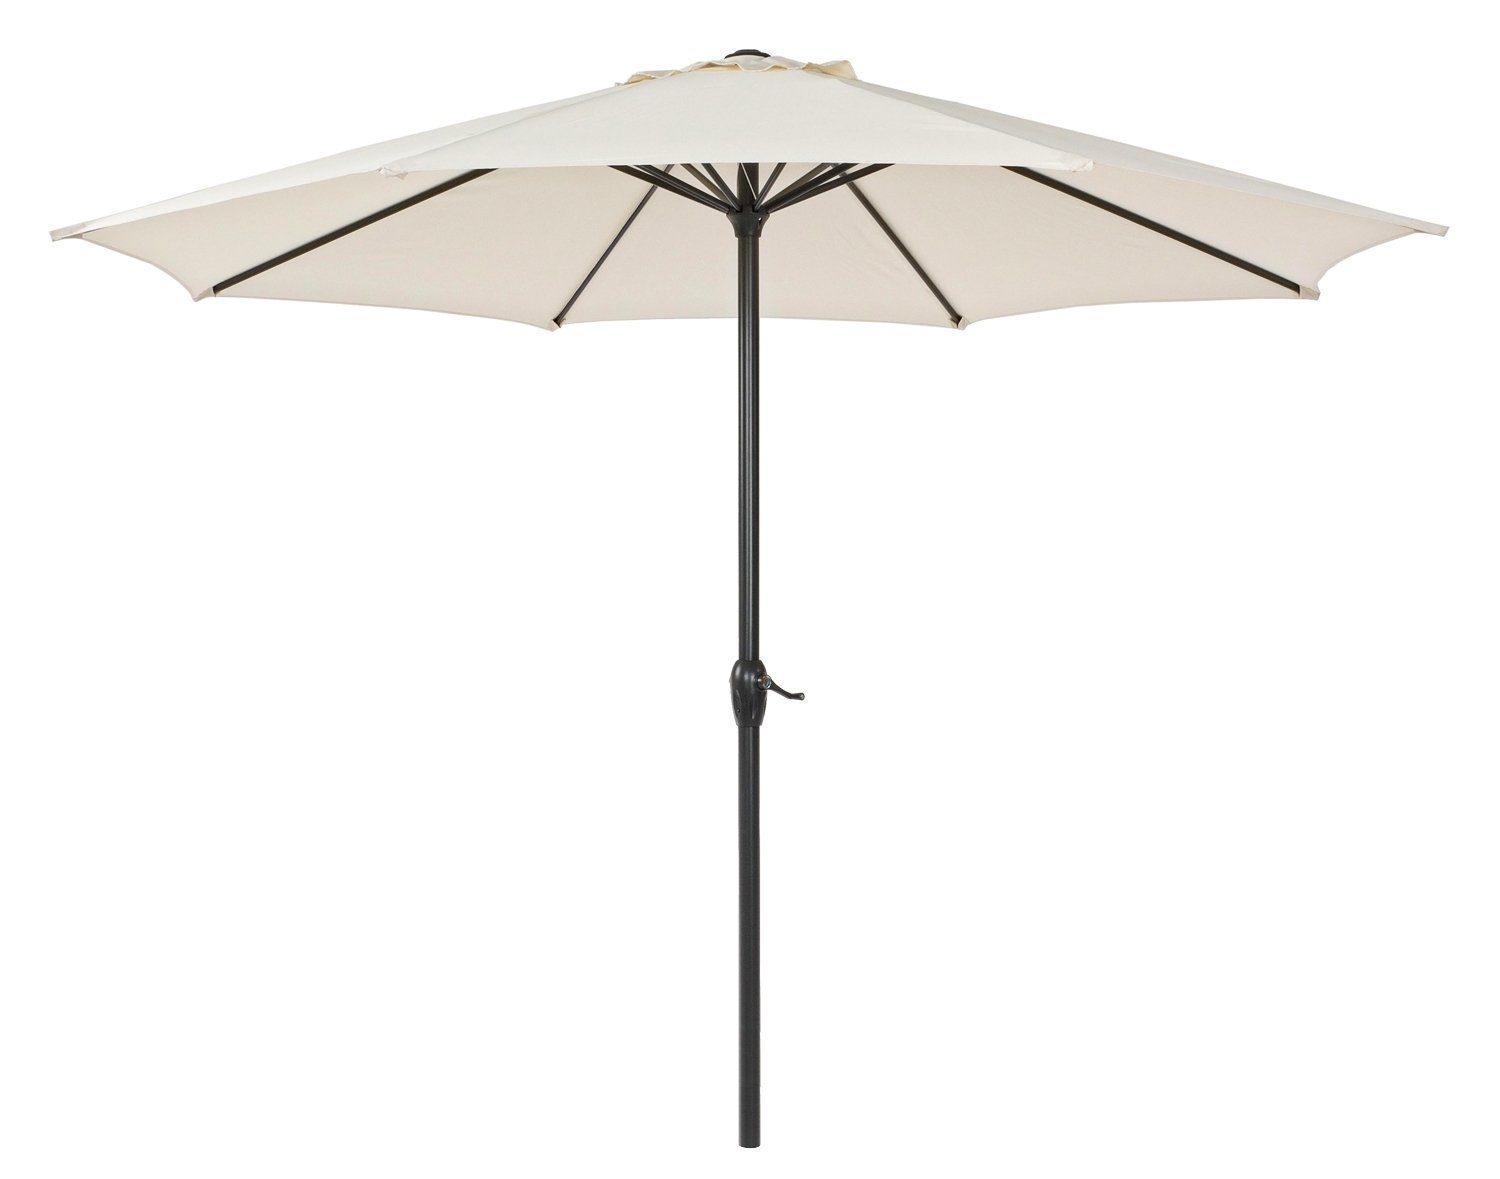 Bizzotto Sonnenschirm KALIFE, Beige, Ø 300 cm, Aluminium, Kippfunktion, Polyesterschirm, ohne Schirmständer